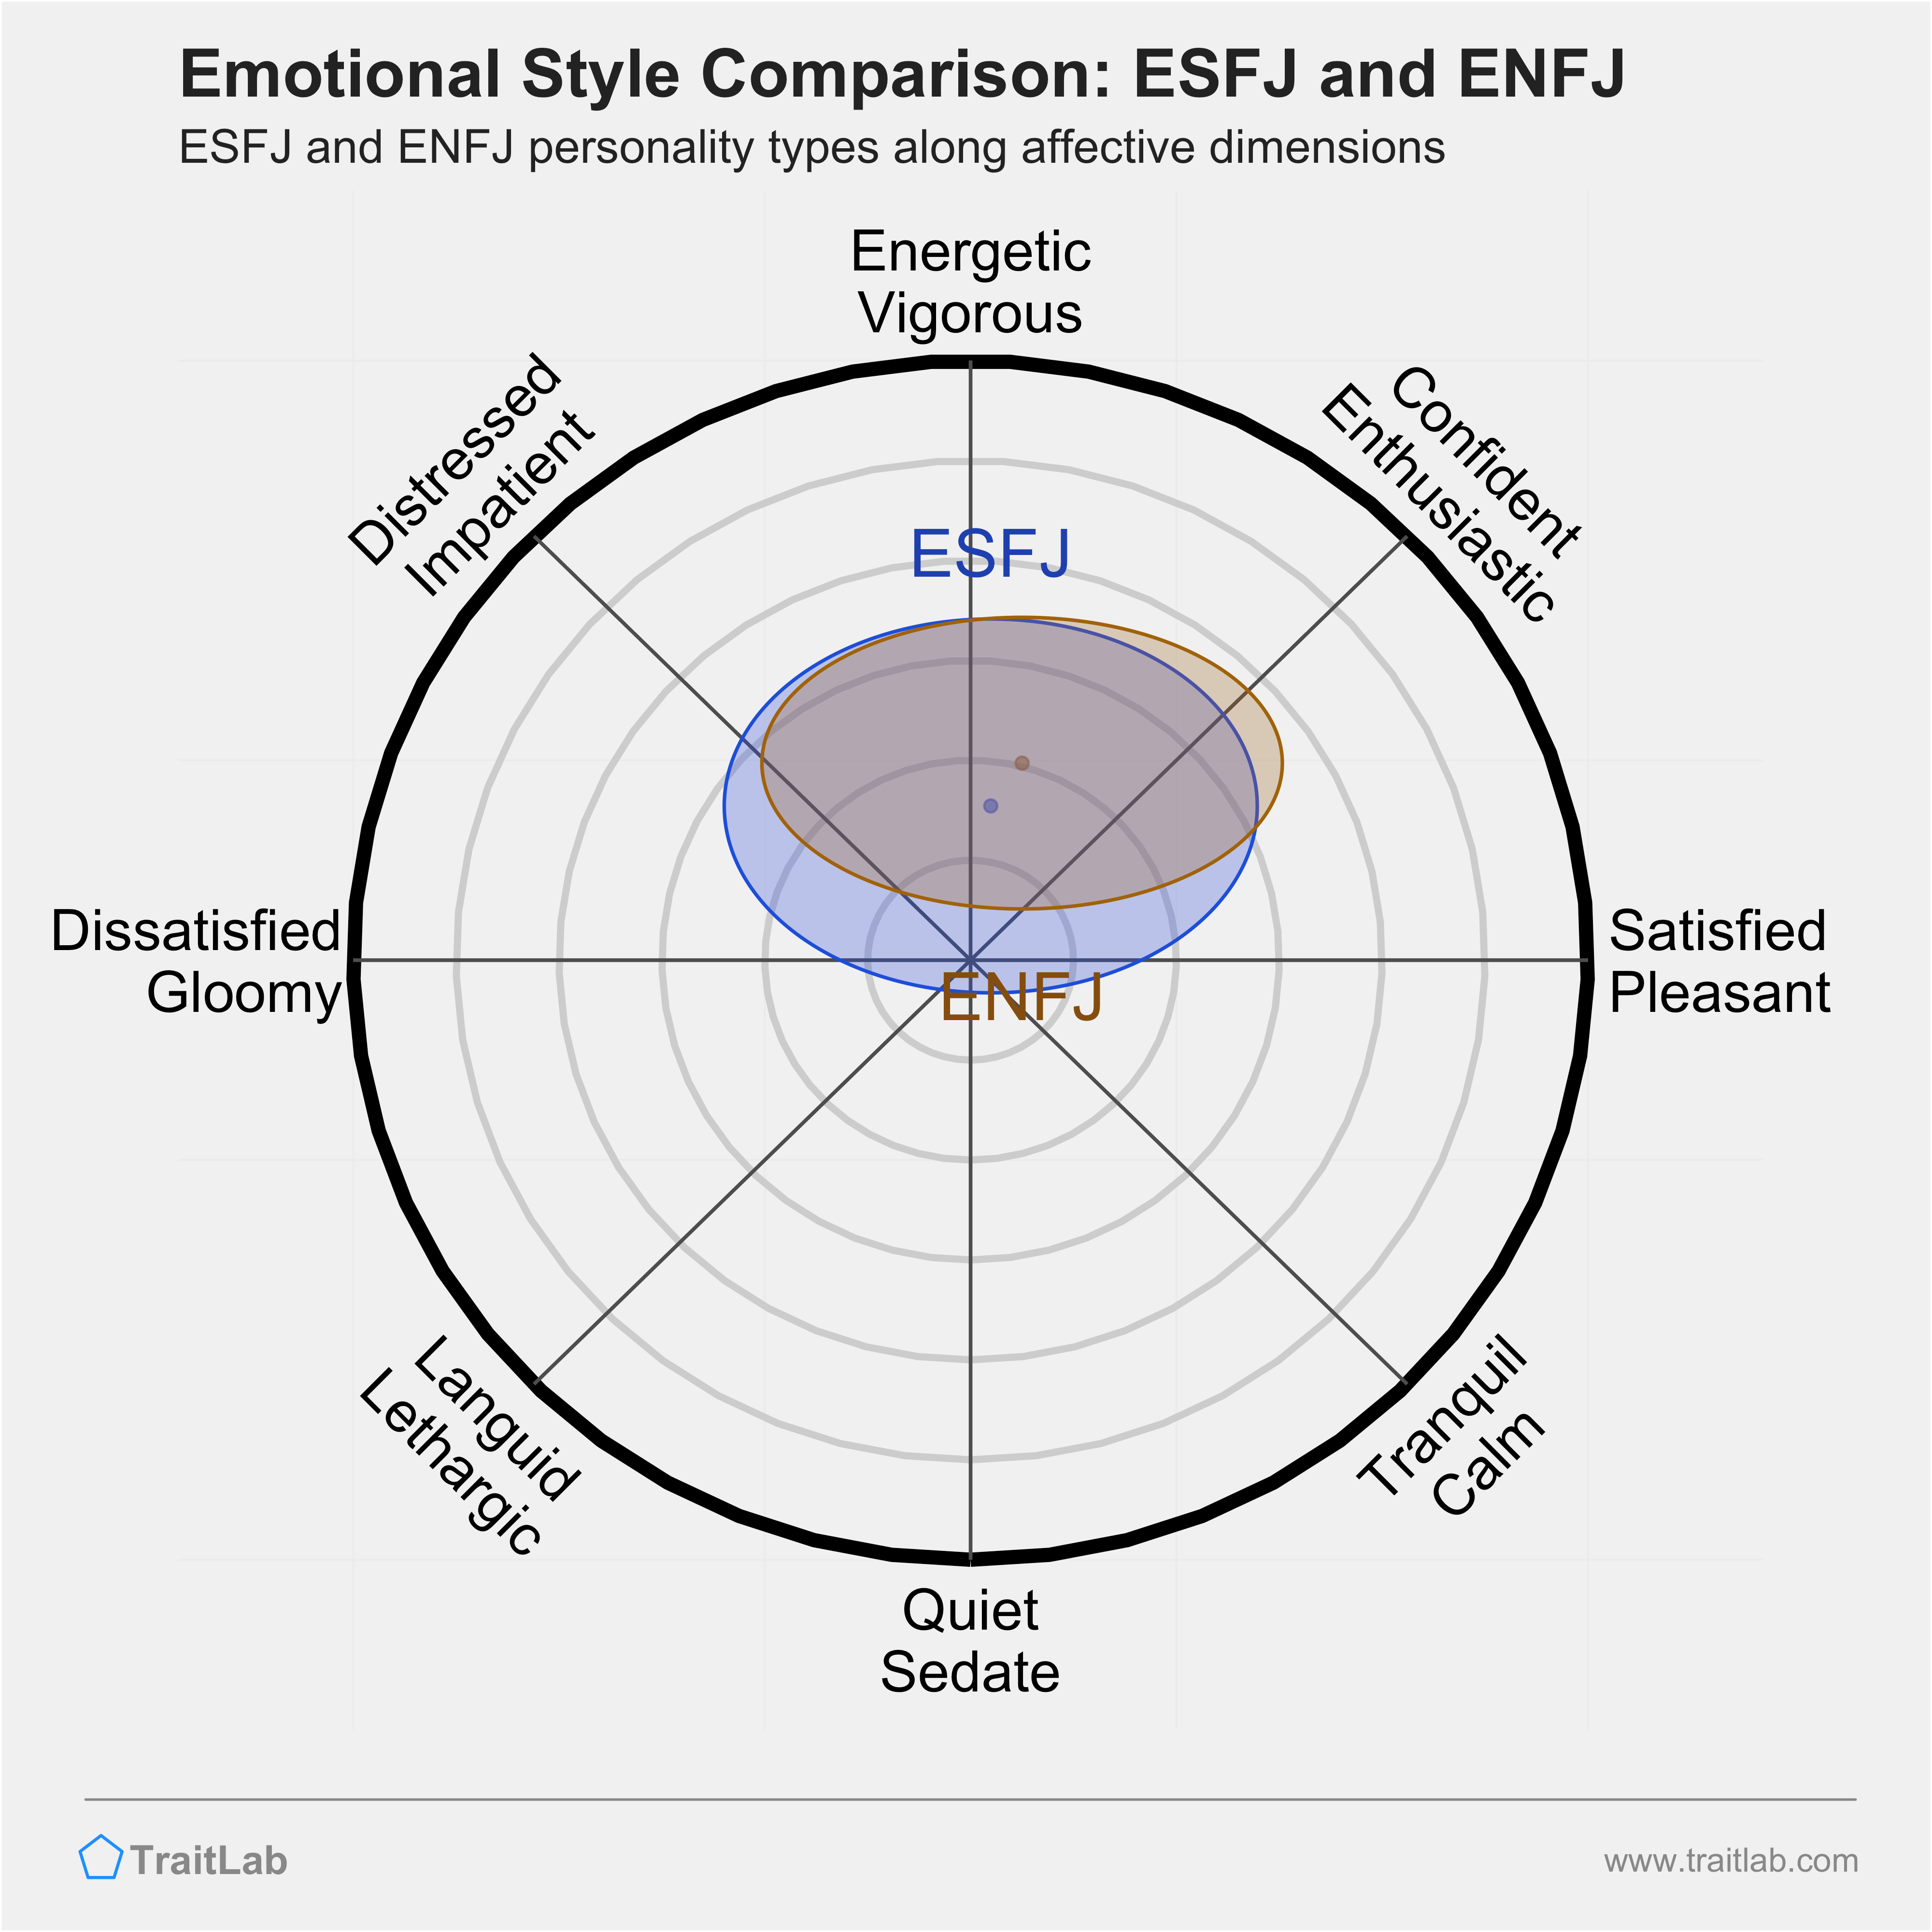 ESFJ and ENFJ comparison across emotional (affective) dimensions